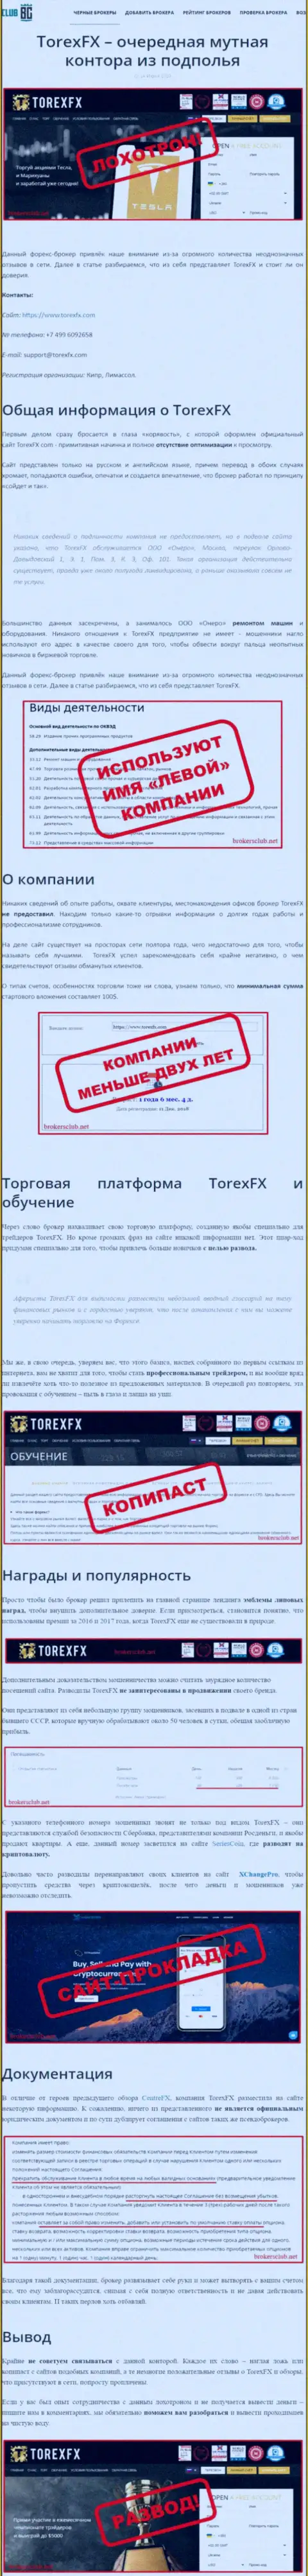 О перечисленных в Торекс ФИкс средствах можете забыть, прикарманивают все до последнего рубля (обзор противозаконных действий)